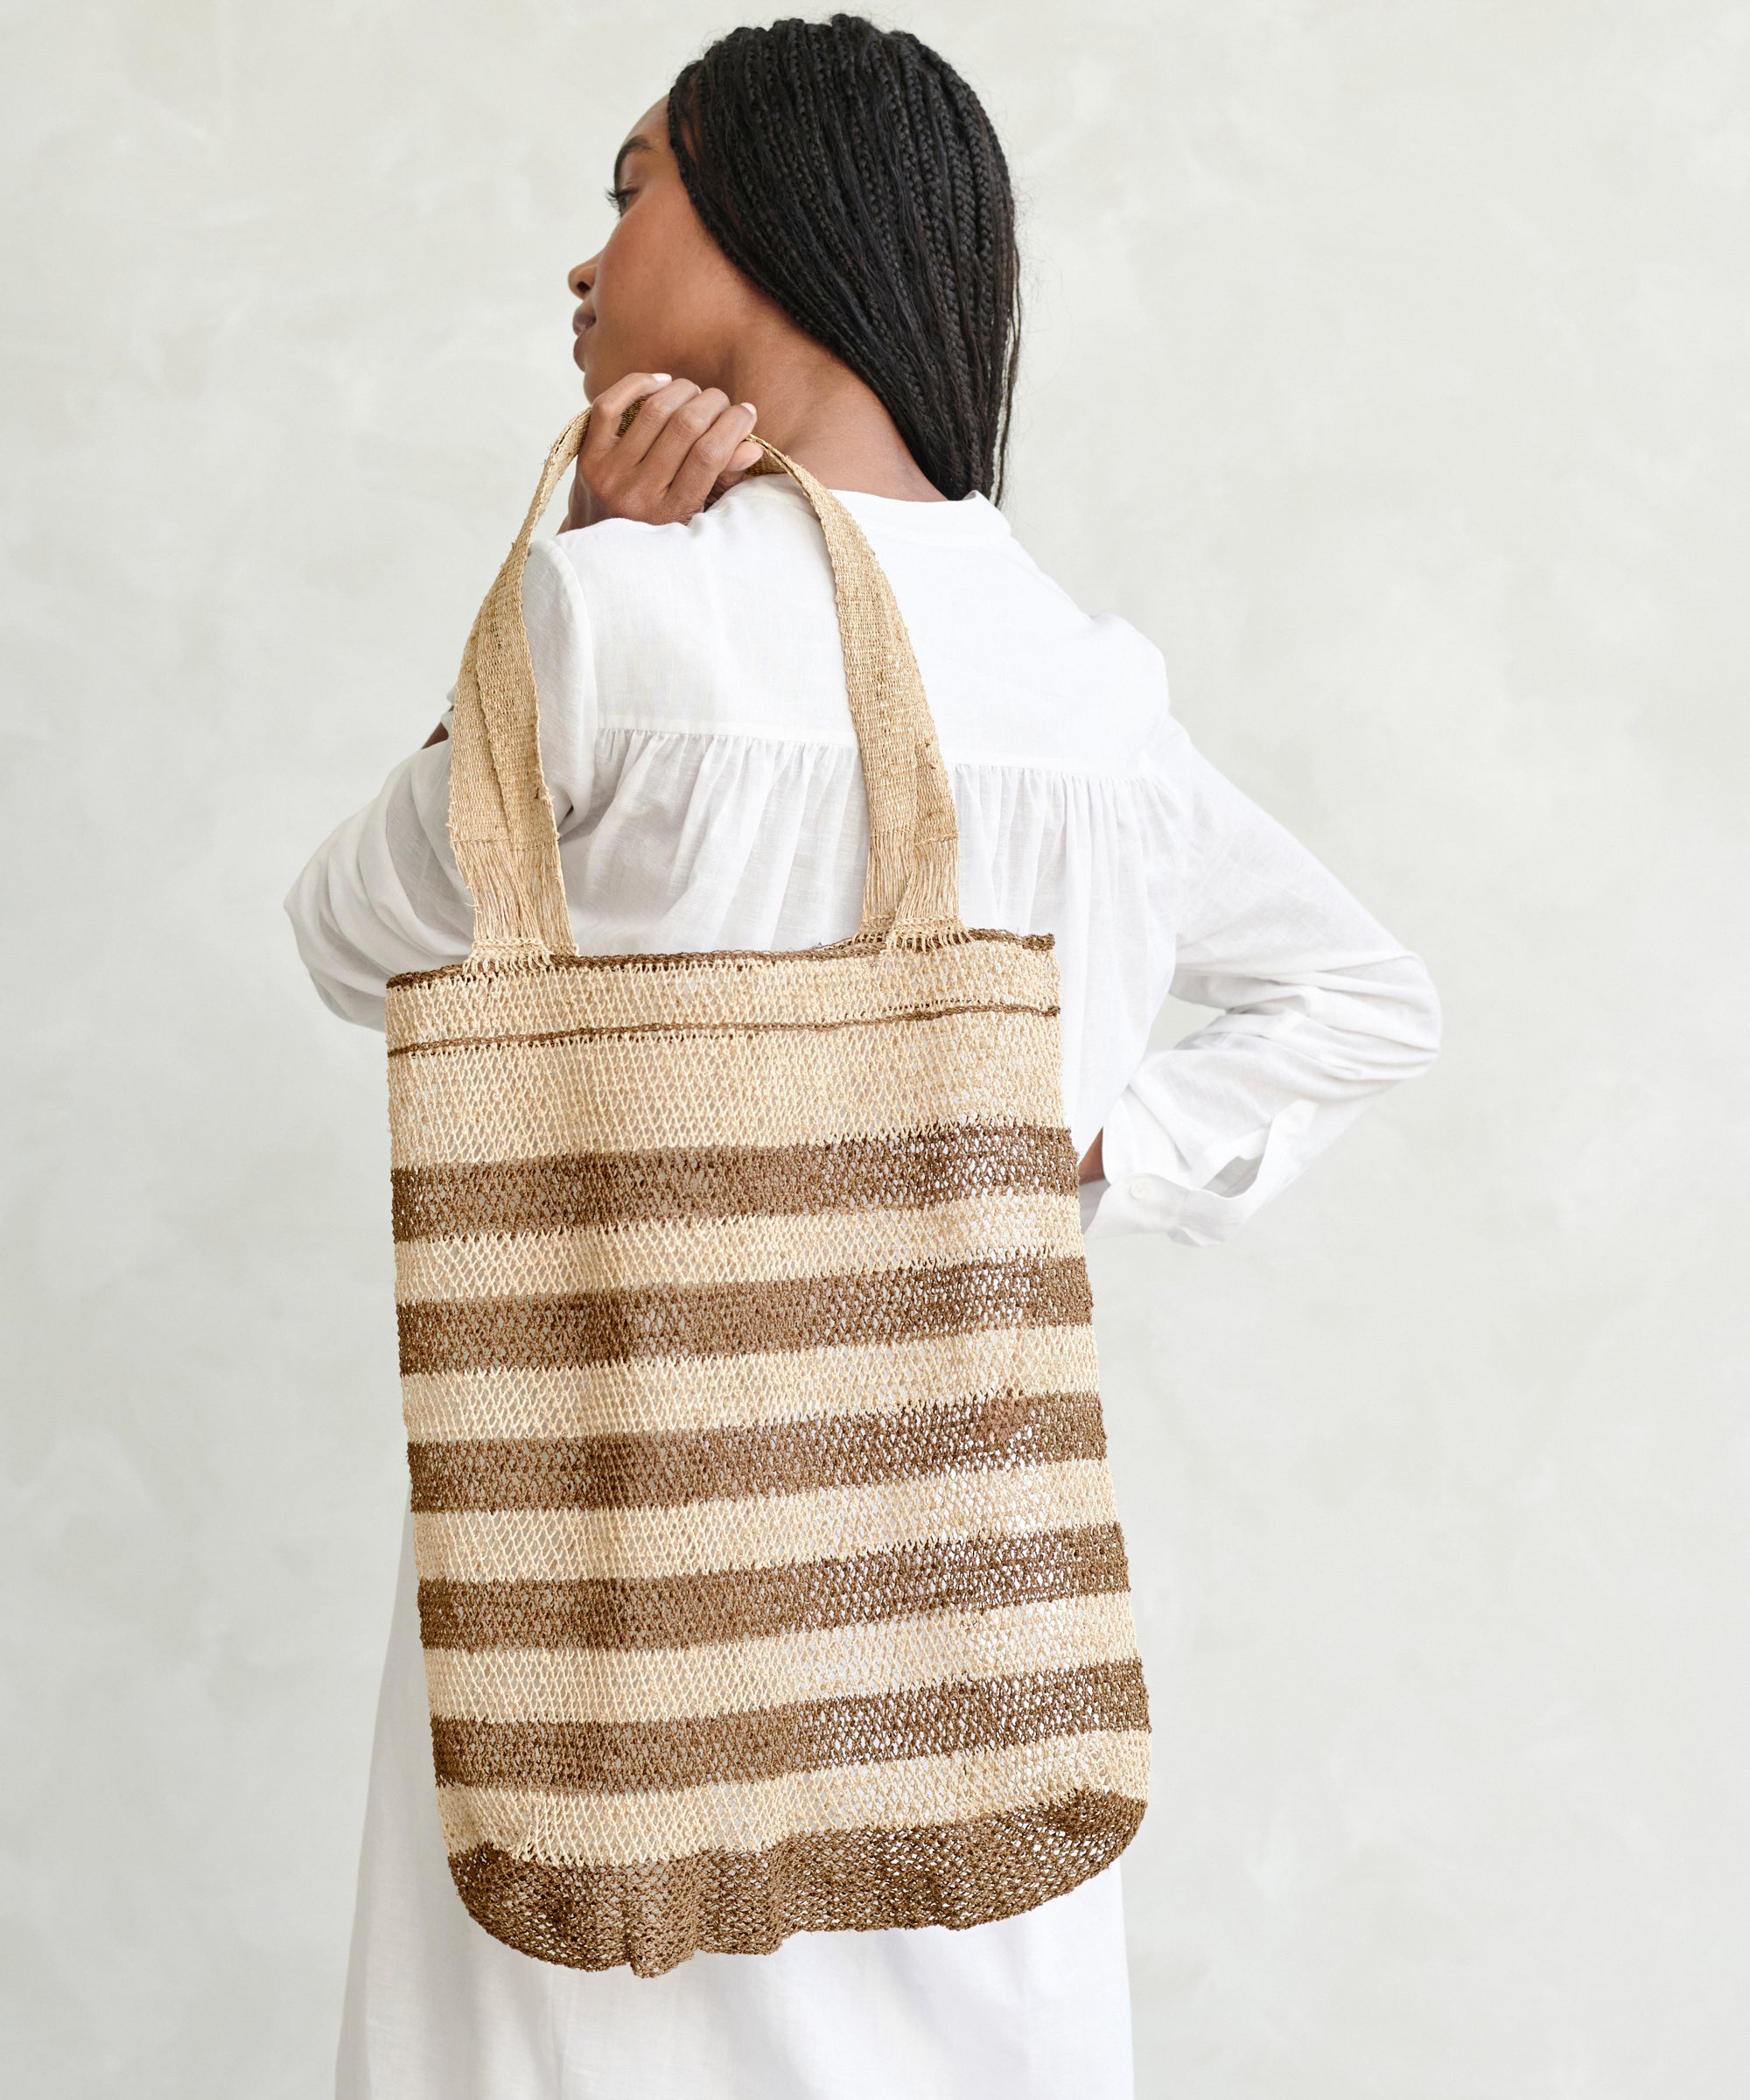 Mini Leather Drawstring Bag – Jenni Kayne